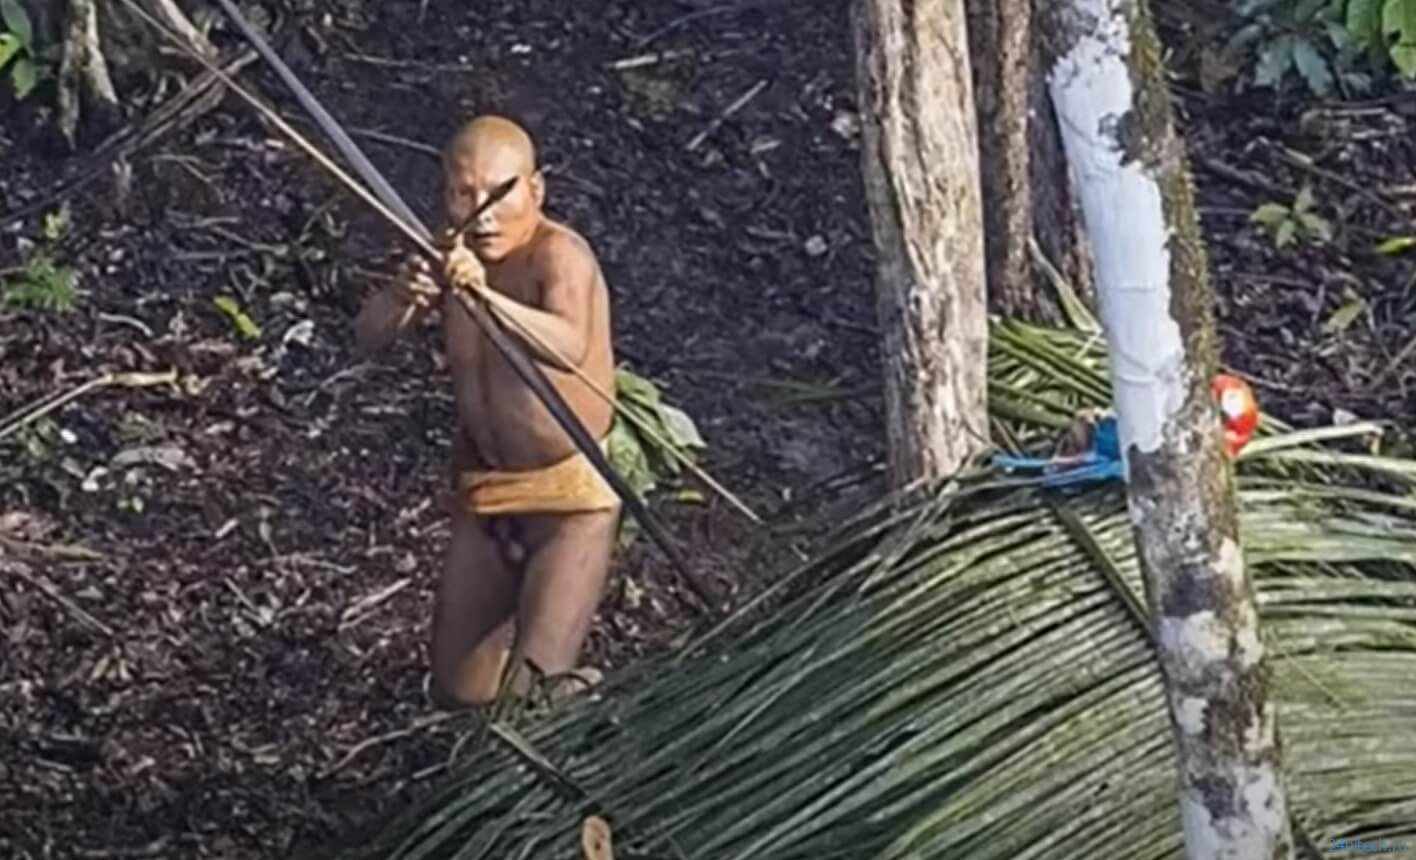 Как жил и умер последний человек из дикого племени Амазонки